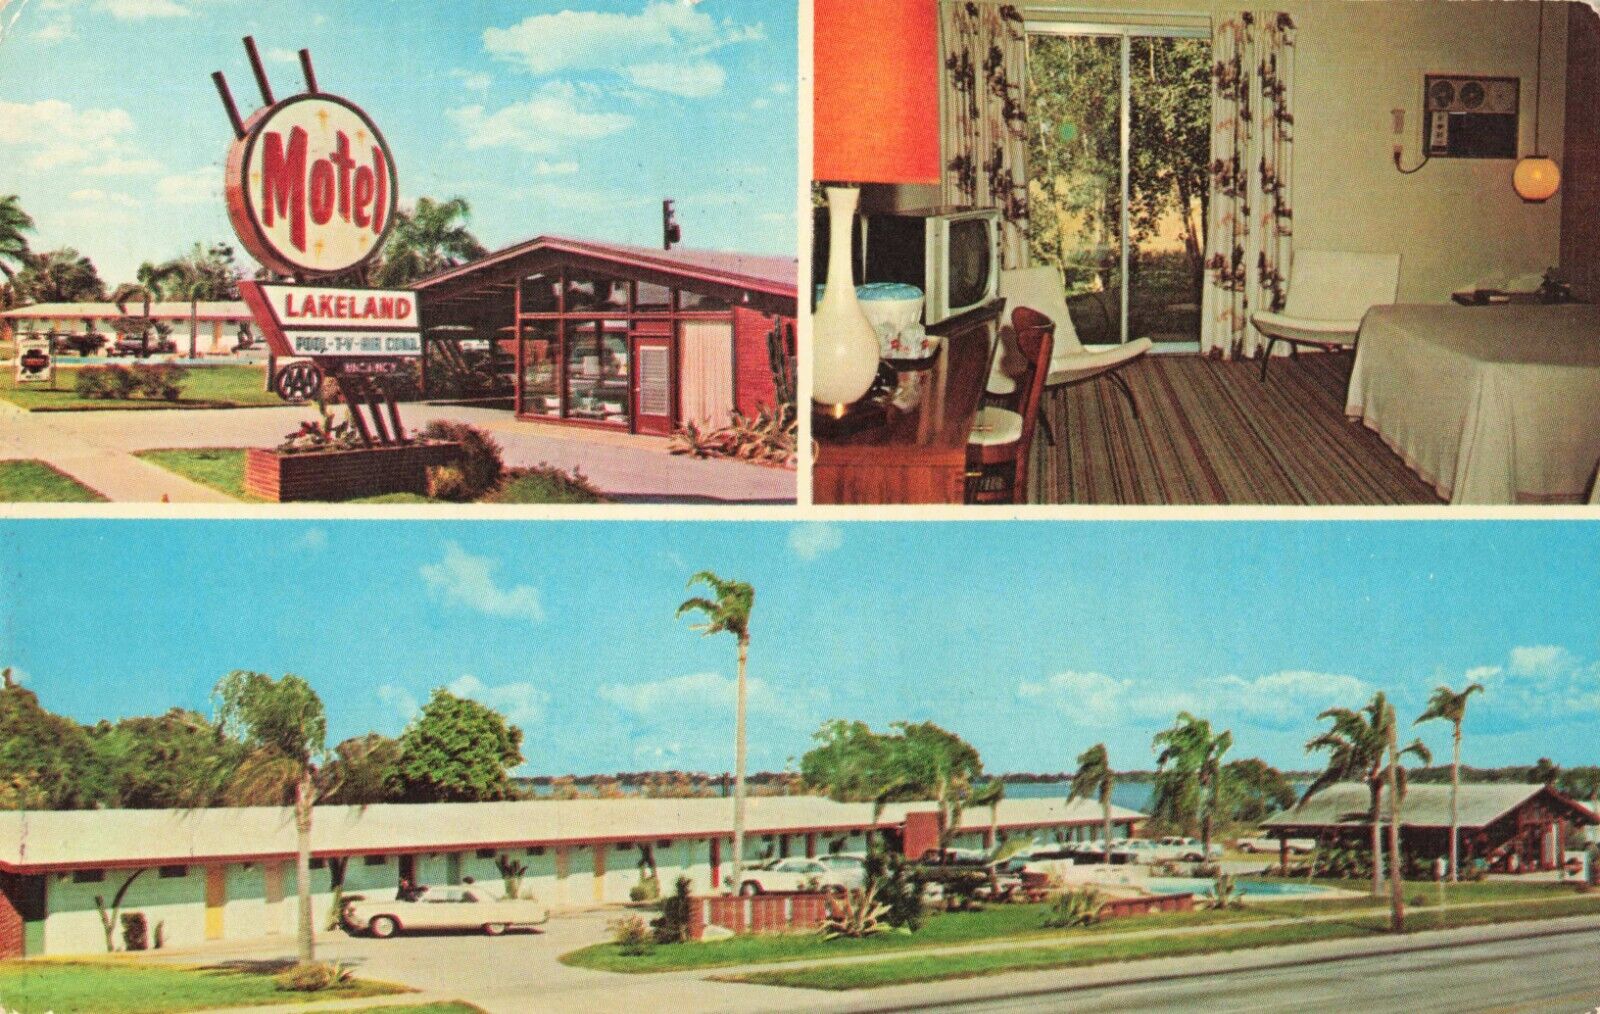 Lakeland Florida, Motel Lakeland, Multi View, Advertising, Vintage Postcard